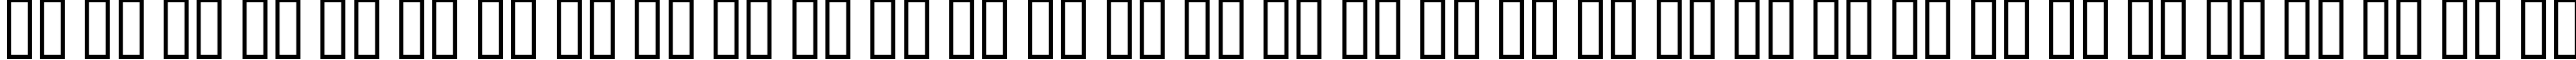 Пример написания русского алфавита шрифтом A Charming Font Outline